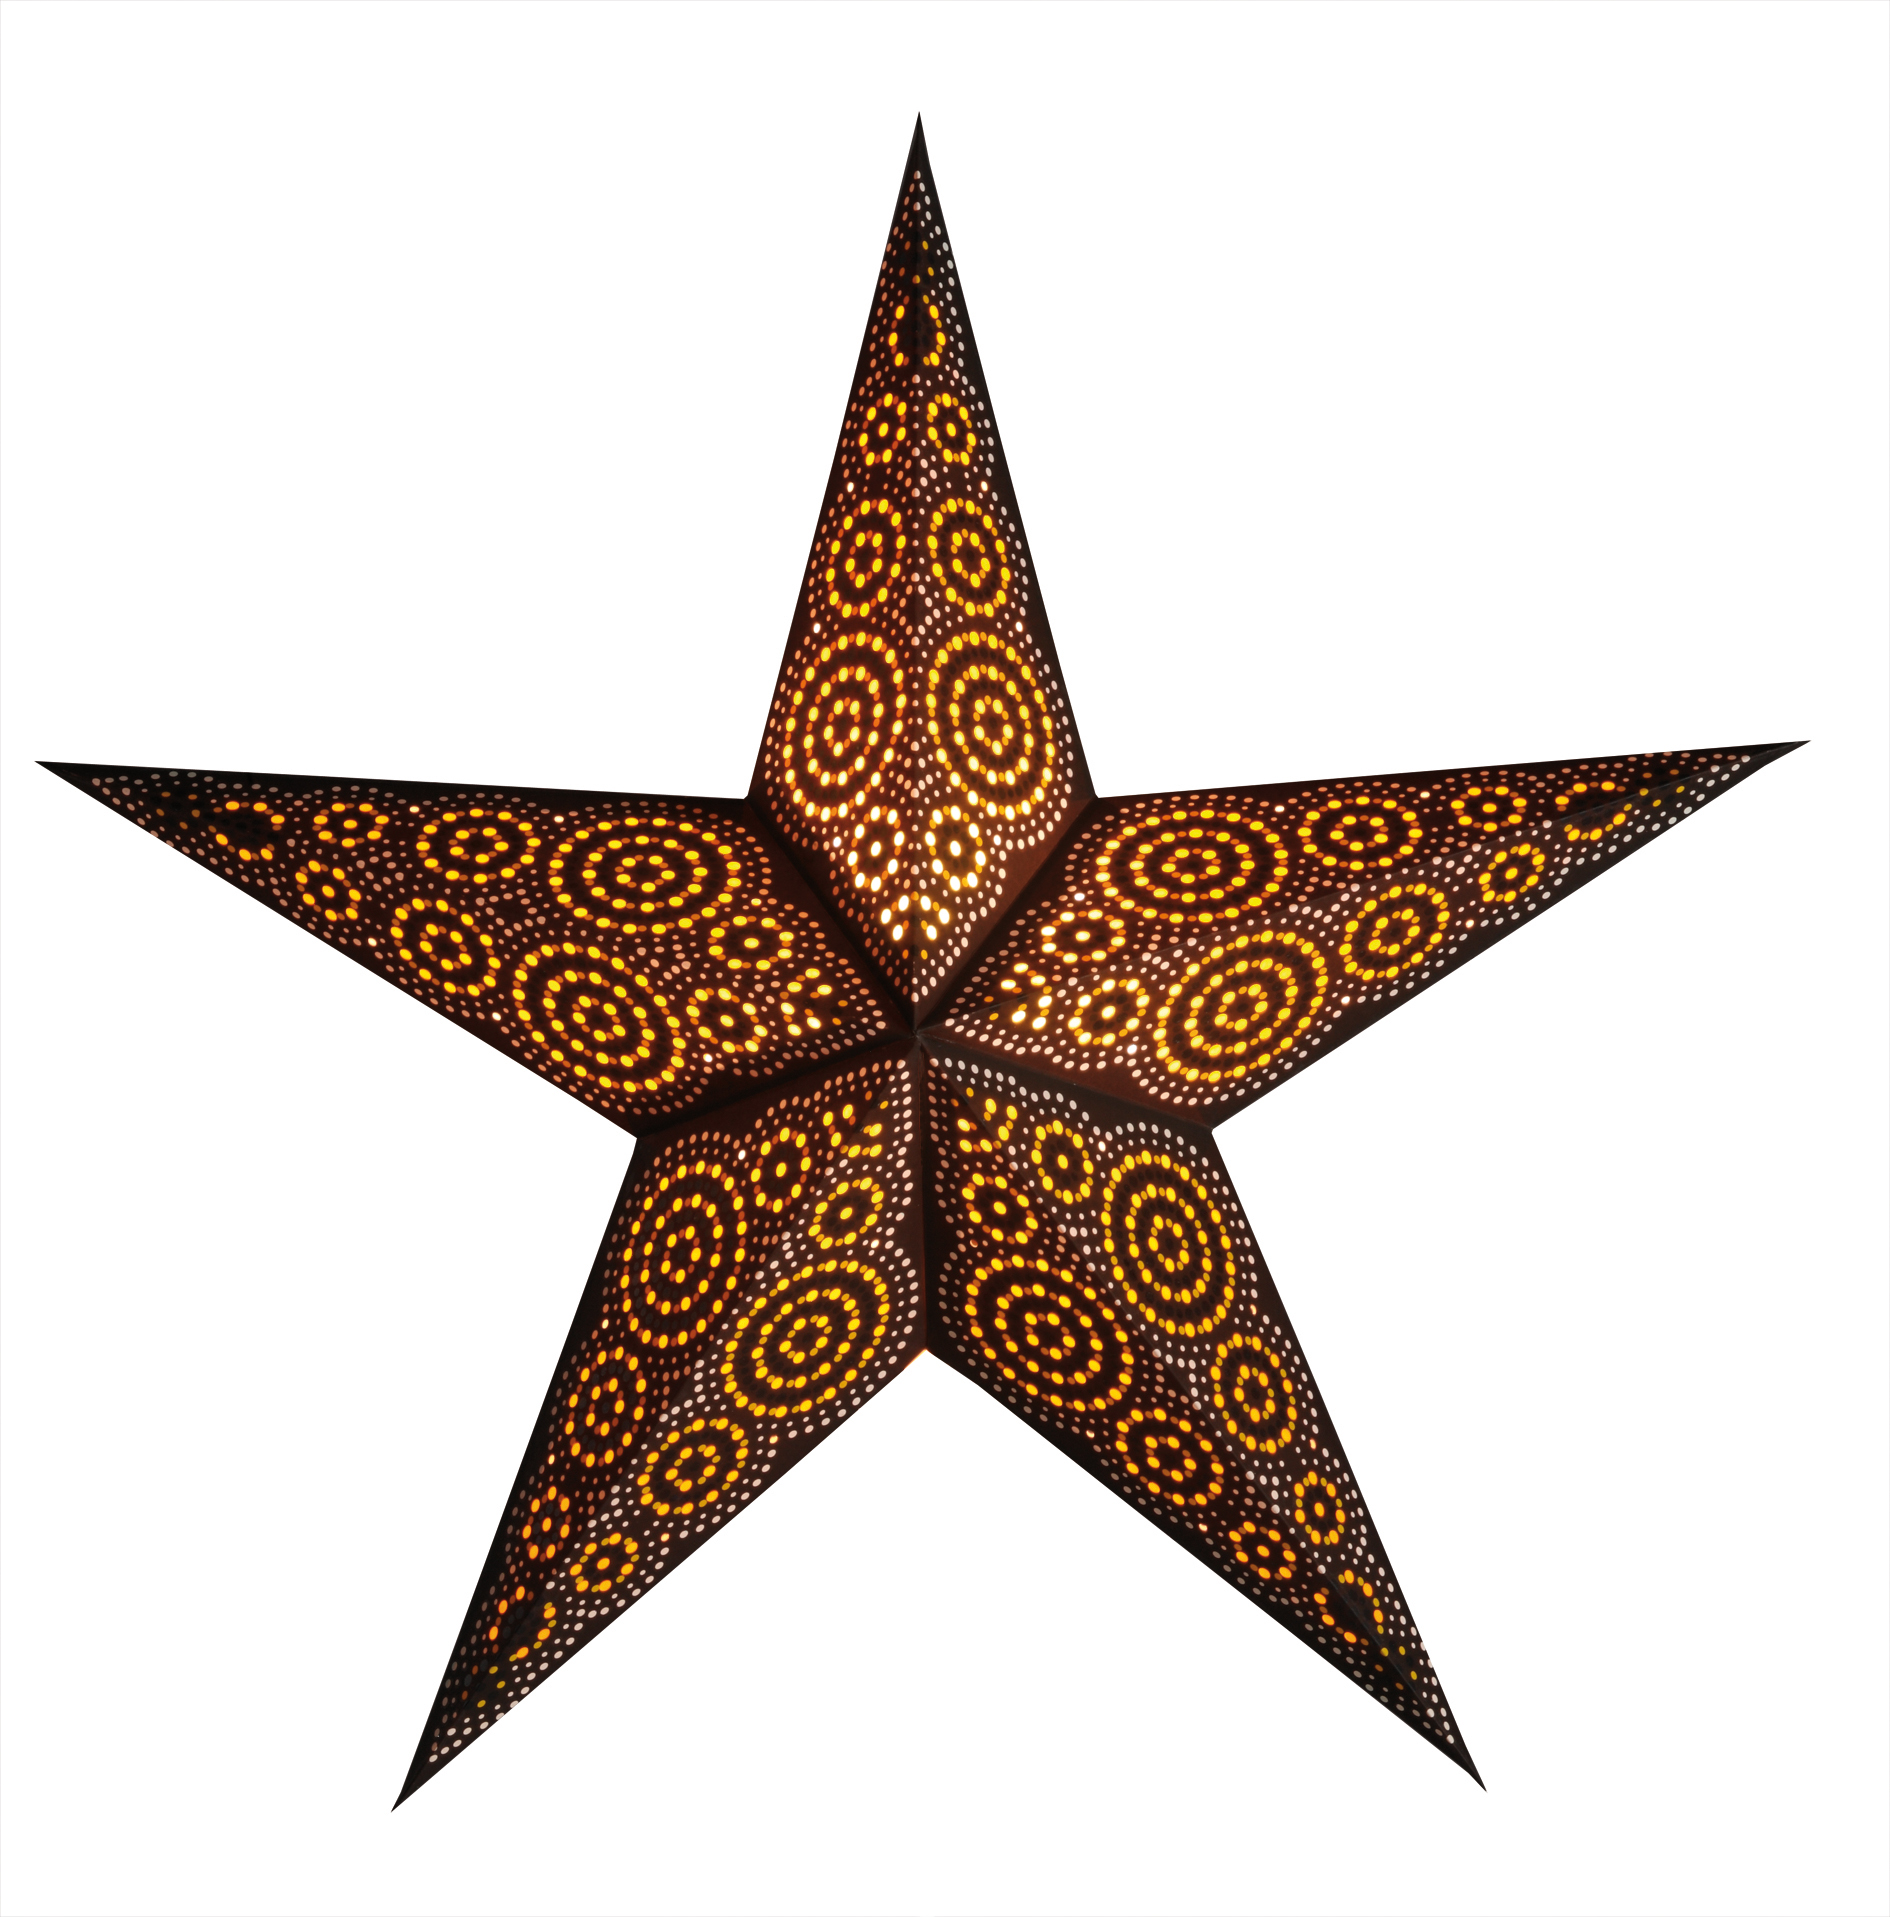 Starlightz Earth Friendly Stern marrakesh brown/yellow, braun gelb, D60cm, 302801, 8904137600343, Leuchtstern, Faltstern, Deckensterne, Papierstern